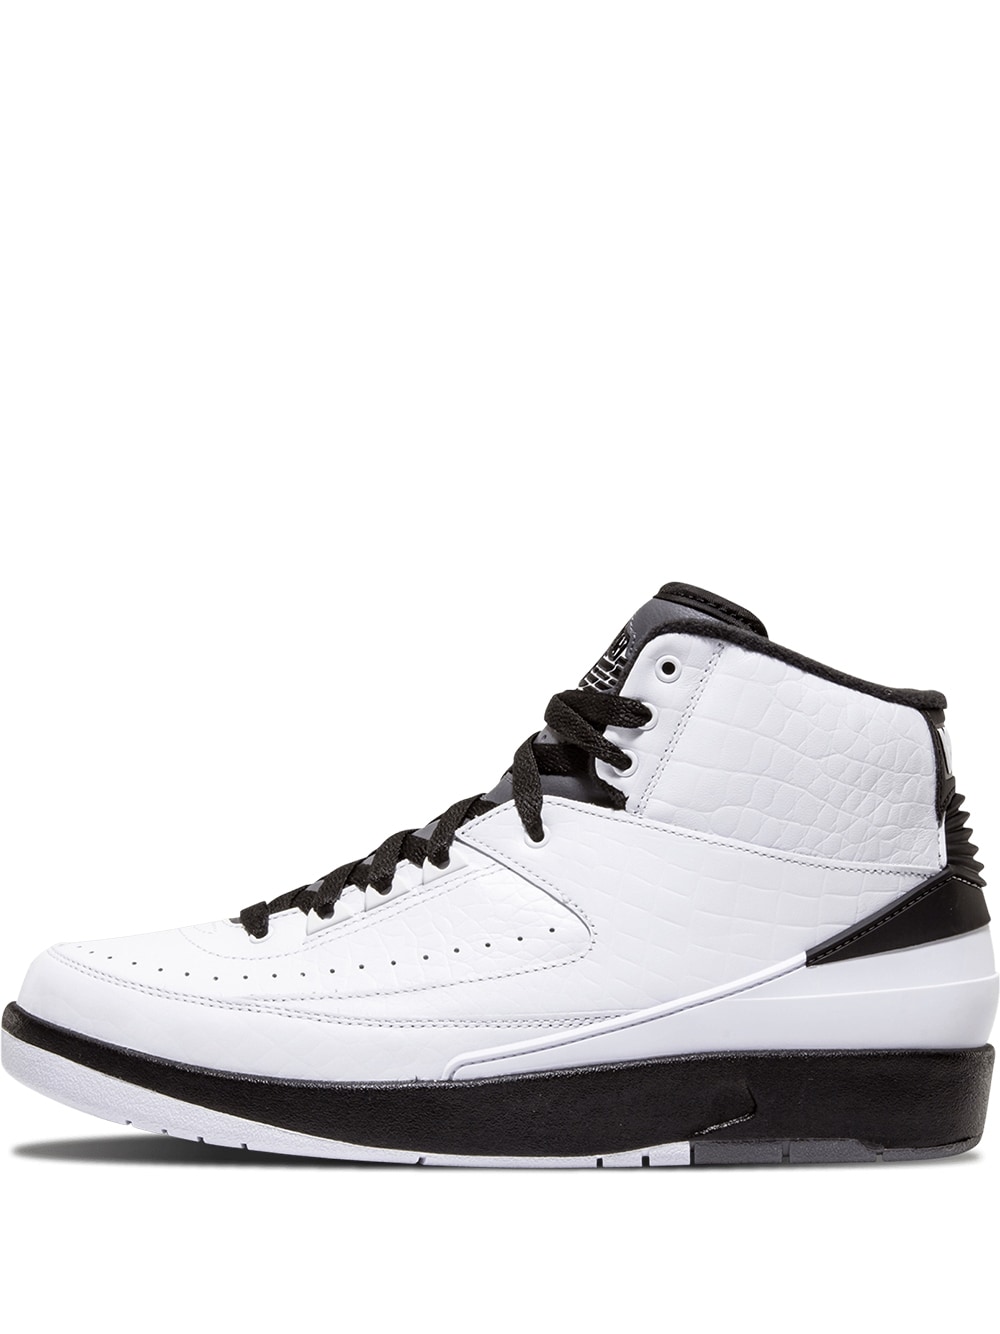 Jordan Air Jordan 2 Retro sneakers - White